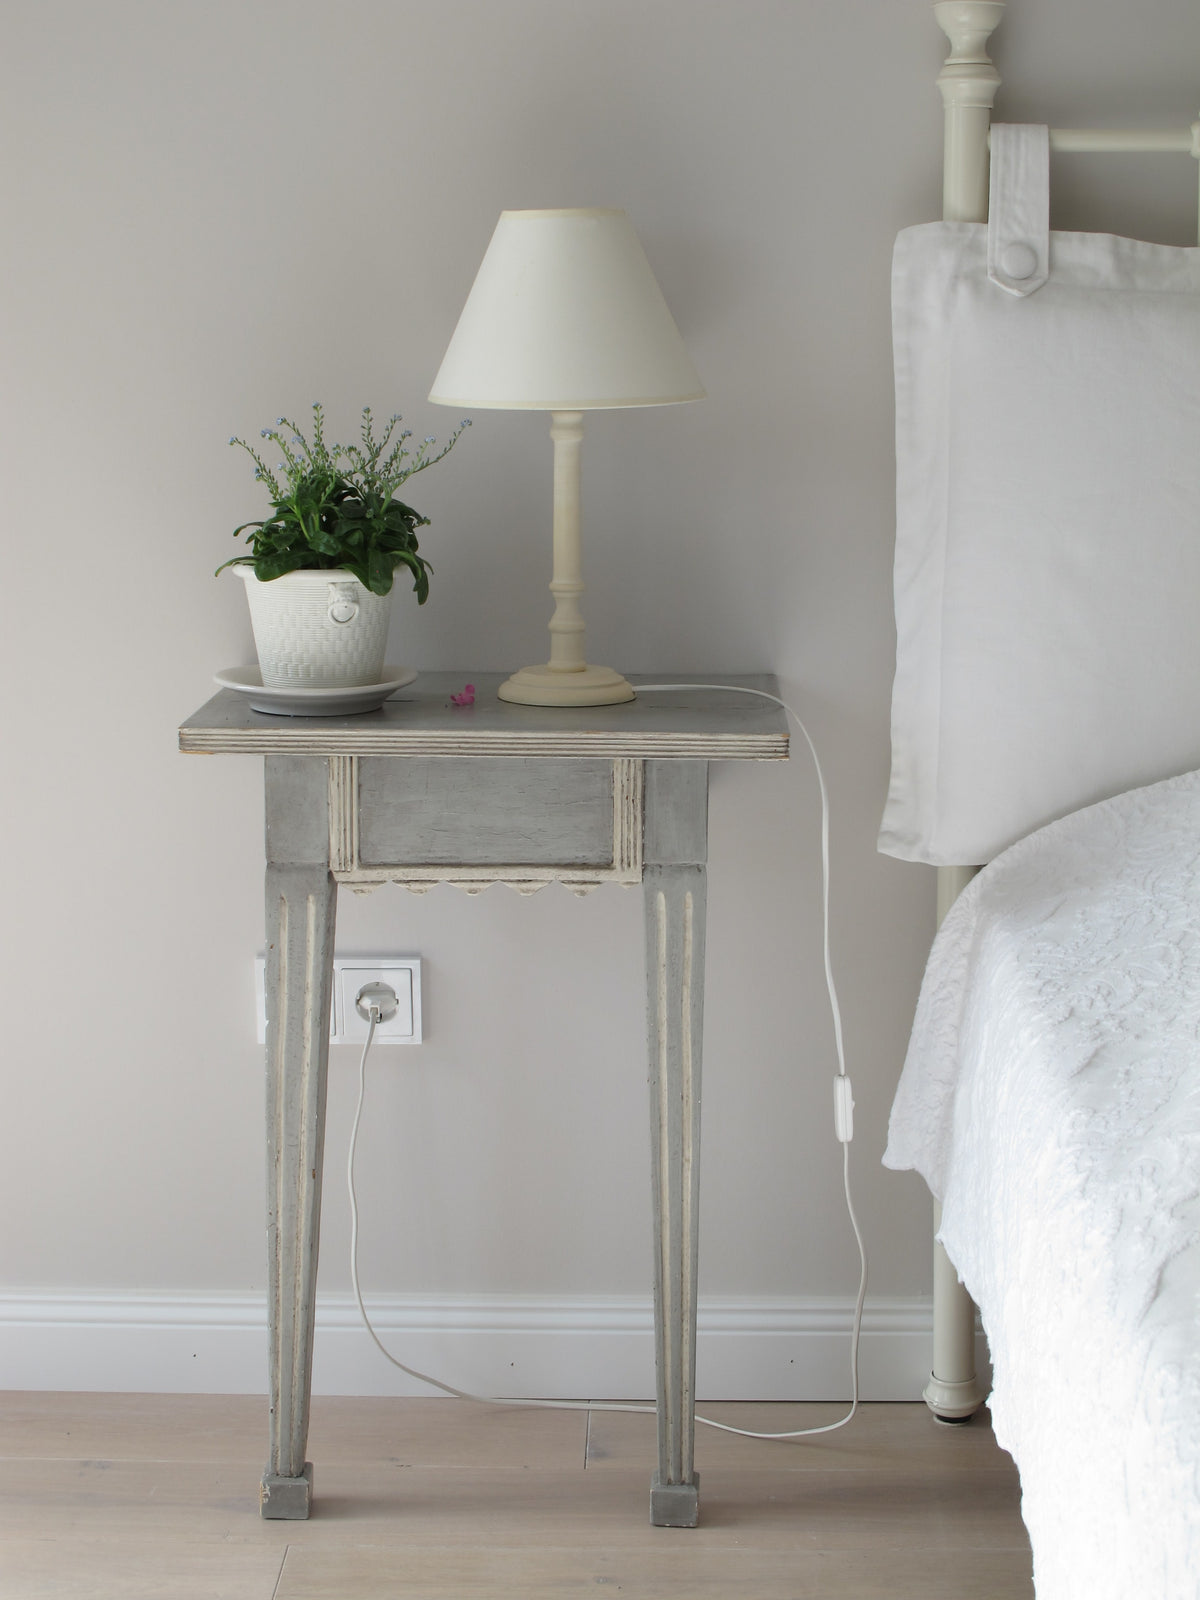 Auf einem grauen Nachttisch steht eine weisse Lampe und eine kleine Pflanze in einem weissen Topf. Daneben steht ein weisses Bett mit weisser Bettwäsche. 